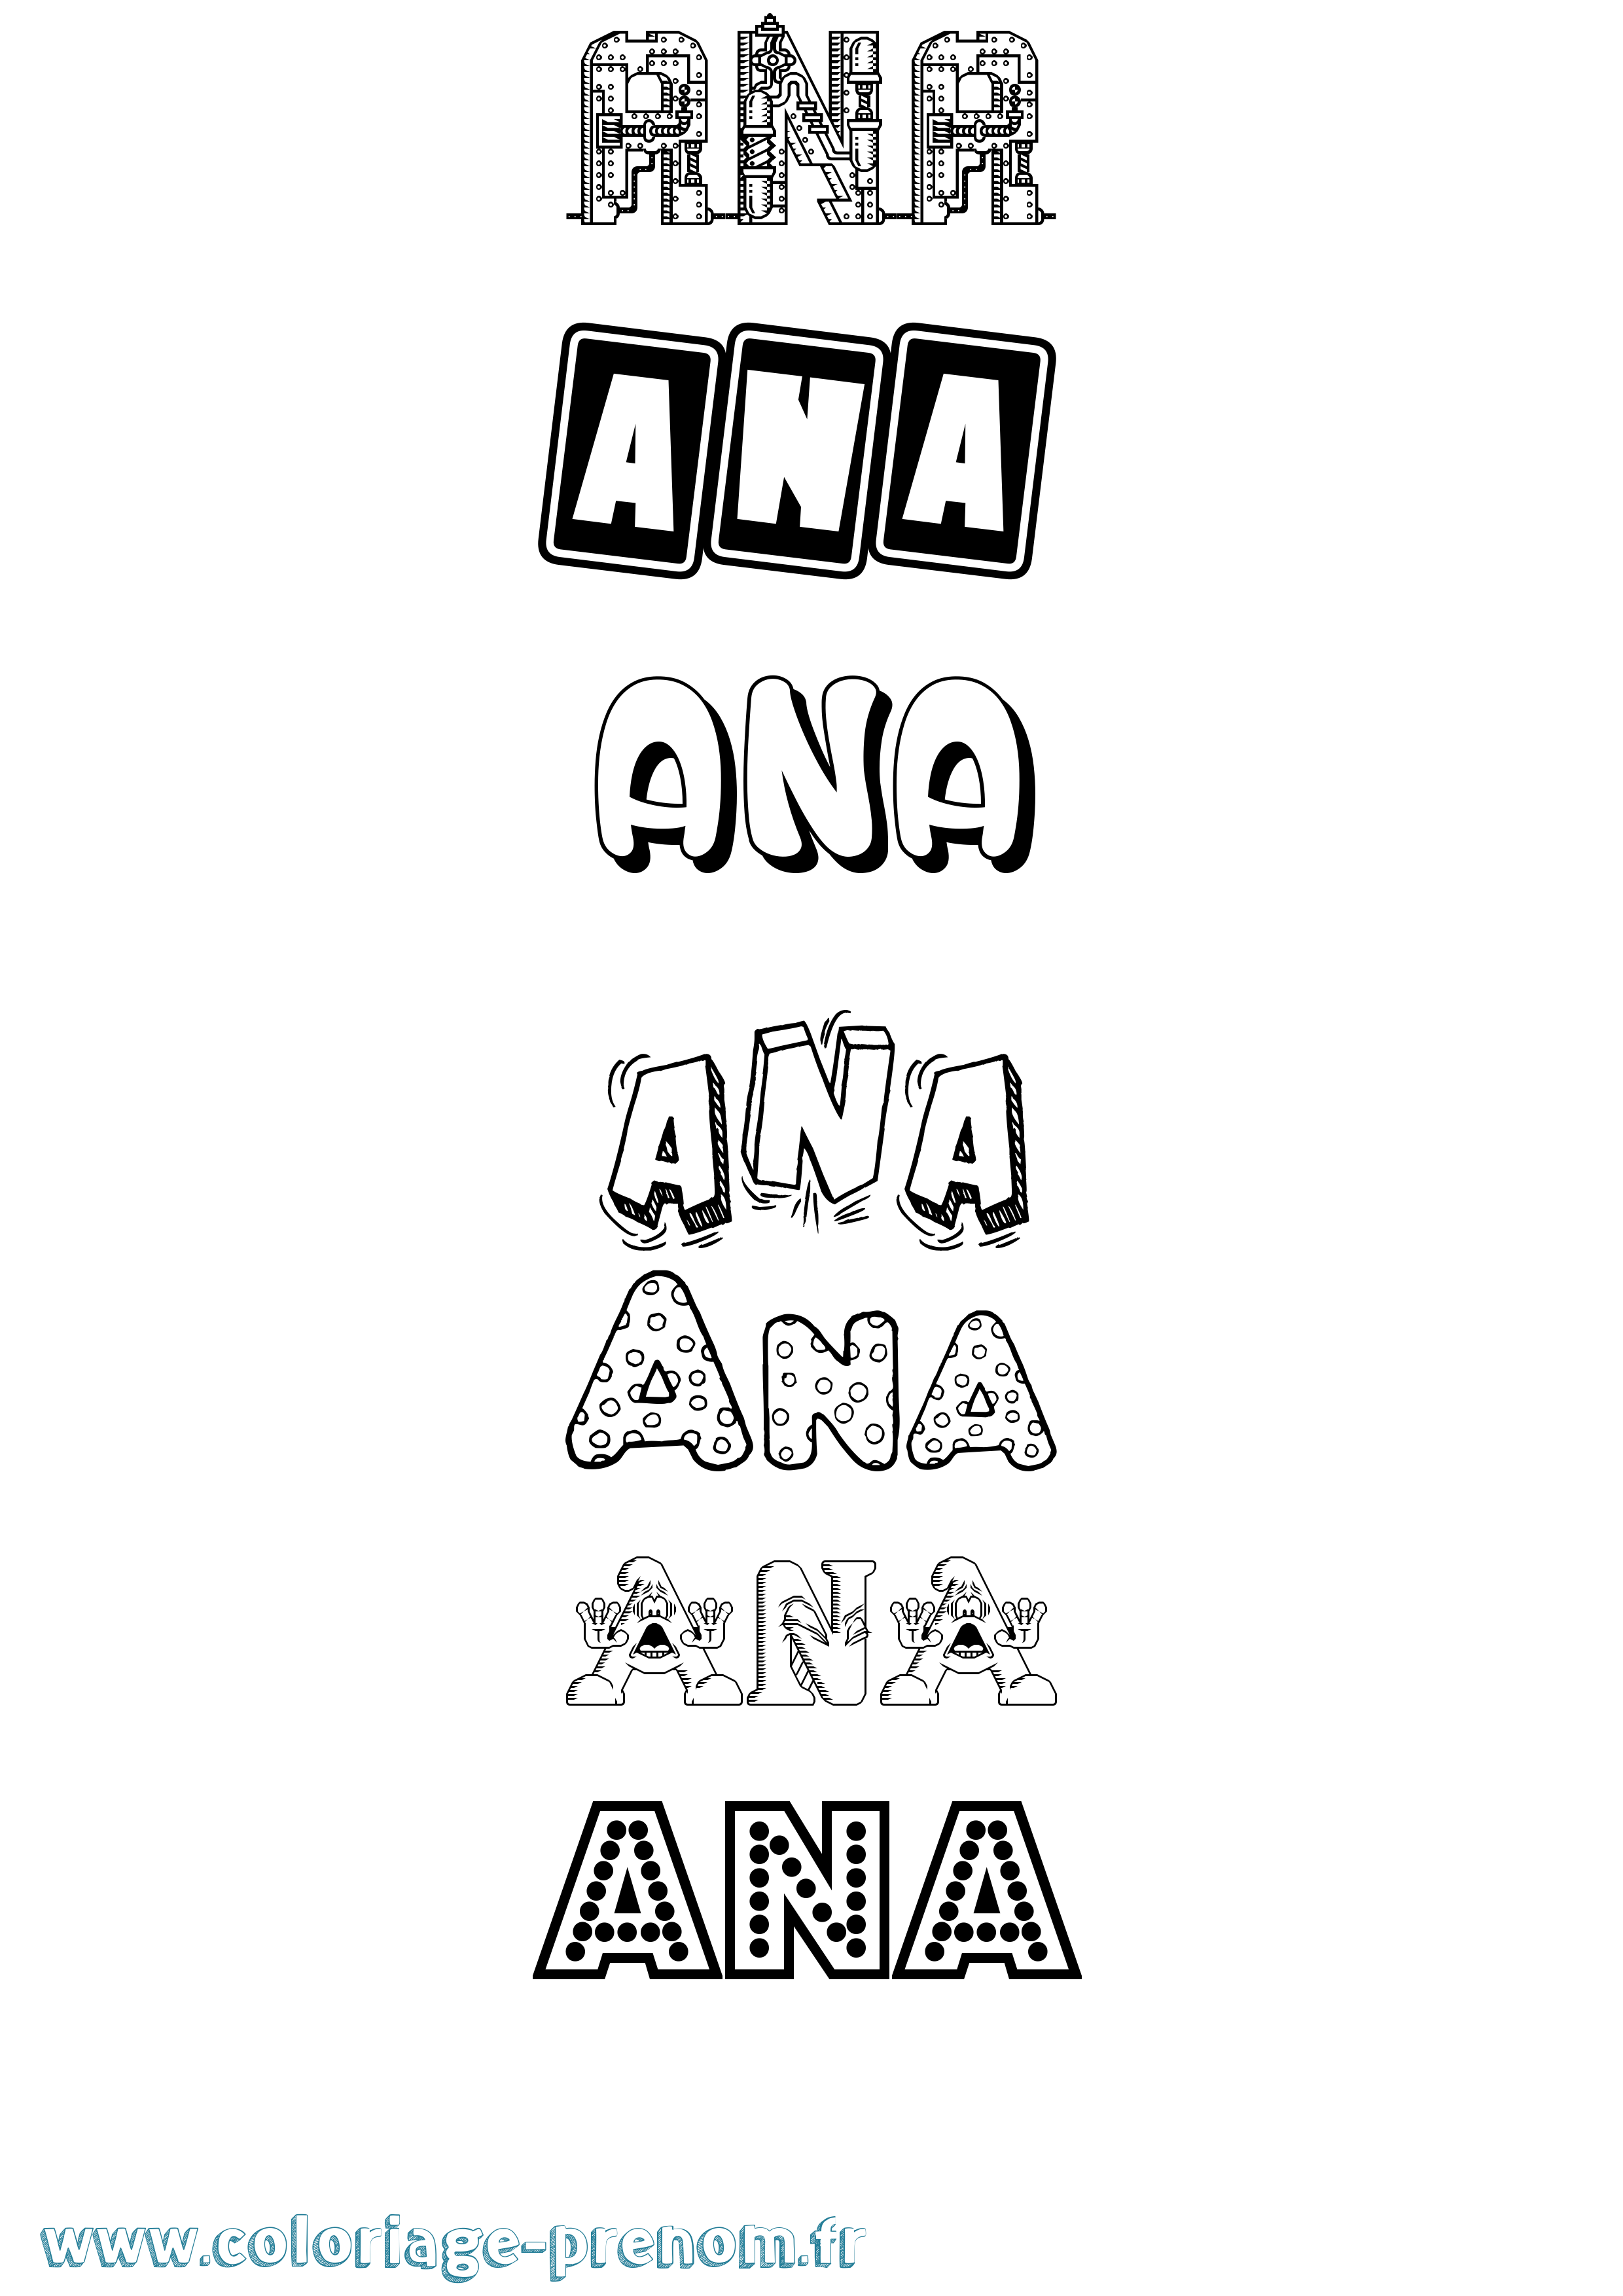 Coloriage prénom Ana